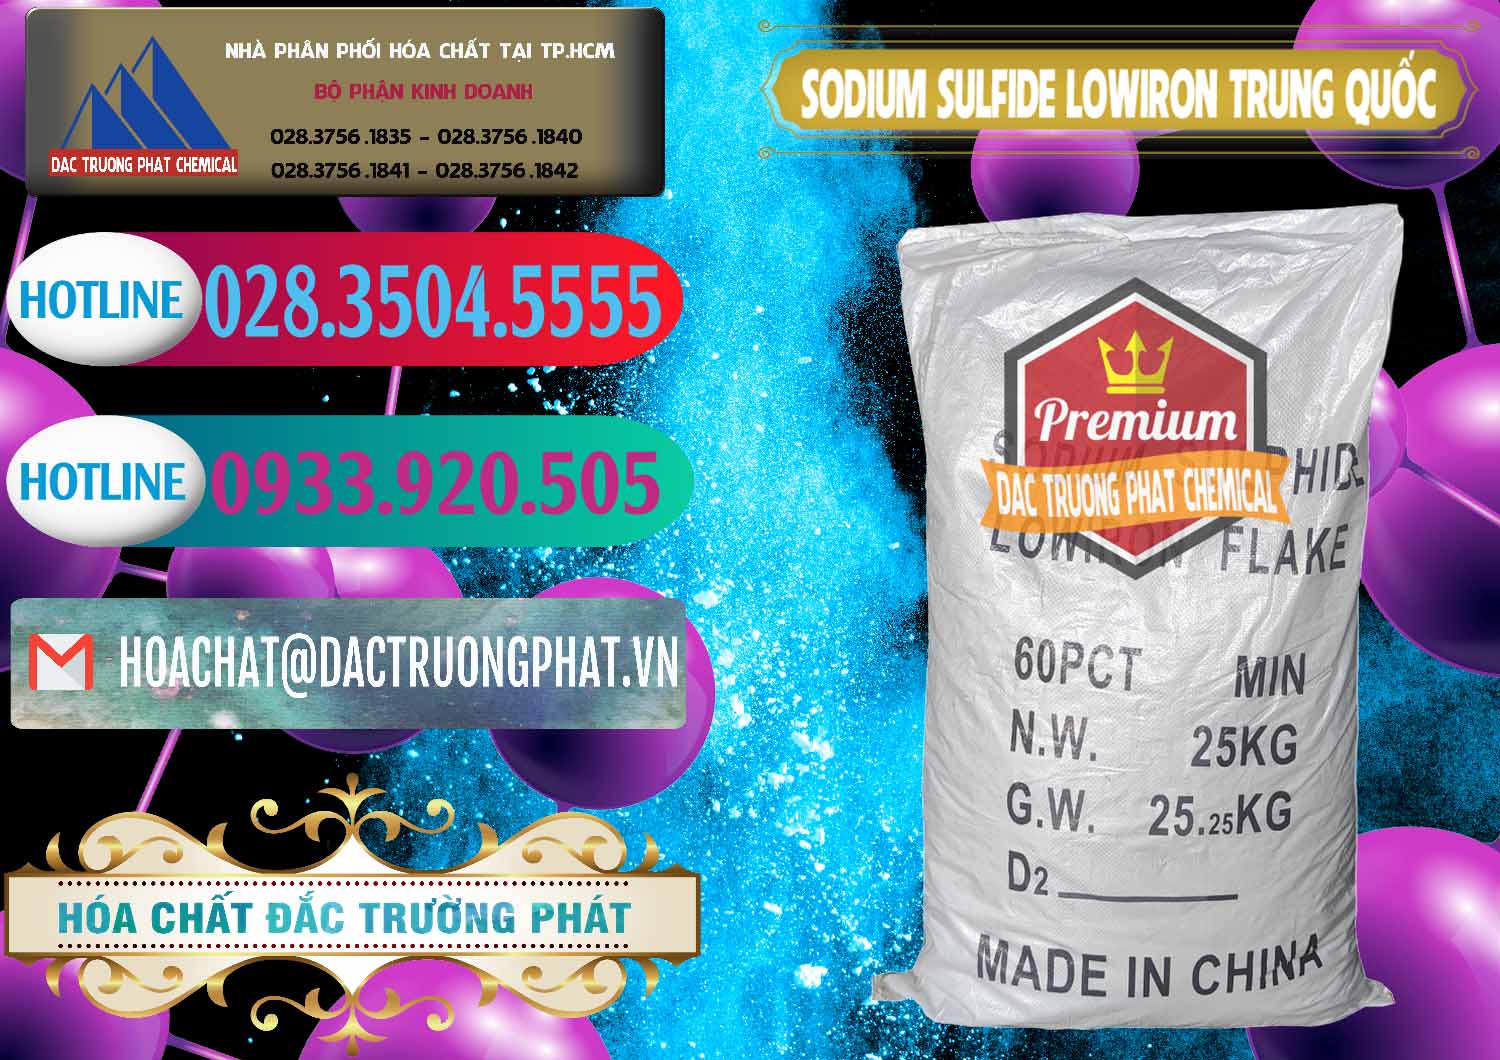 Nơi nhập khẩu - bán Sodium Sulfide NA2S – Đá Thối Lowiron Trung Quốc China - 0227 - Cty chuyên phân phối ( cung ứng ) hóa chất tại TP.HCM - truongphat.vn